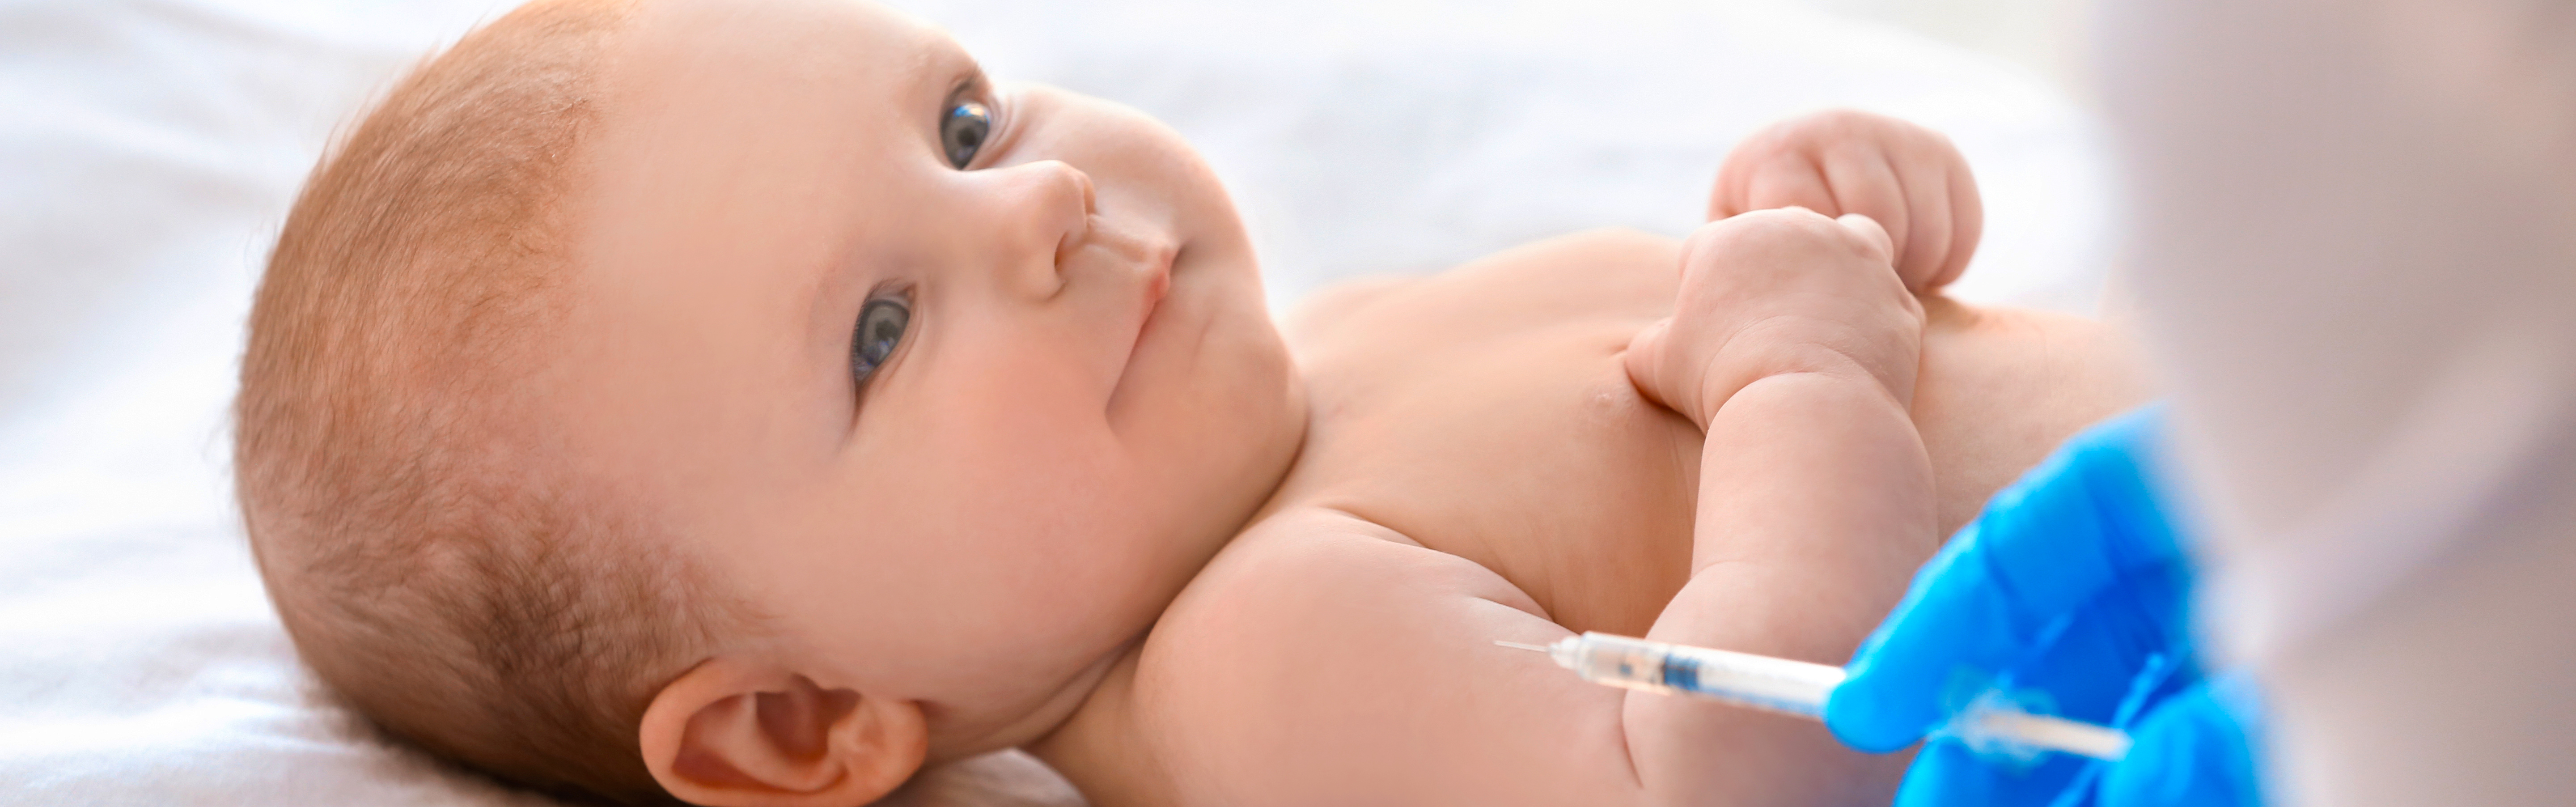 baby awaits vaccine